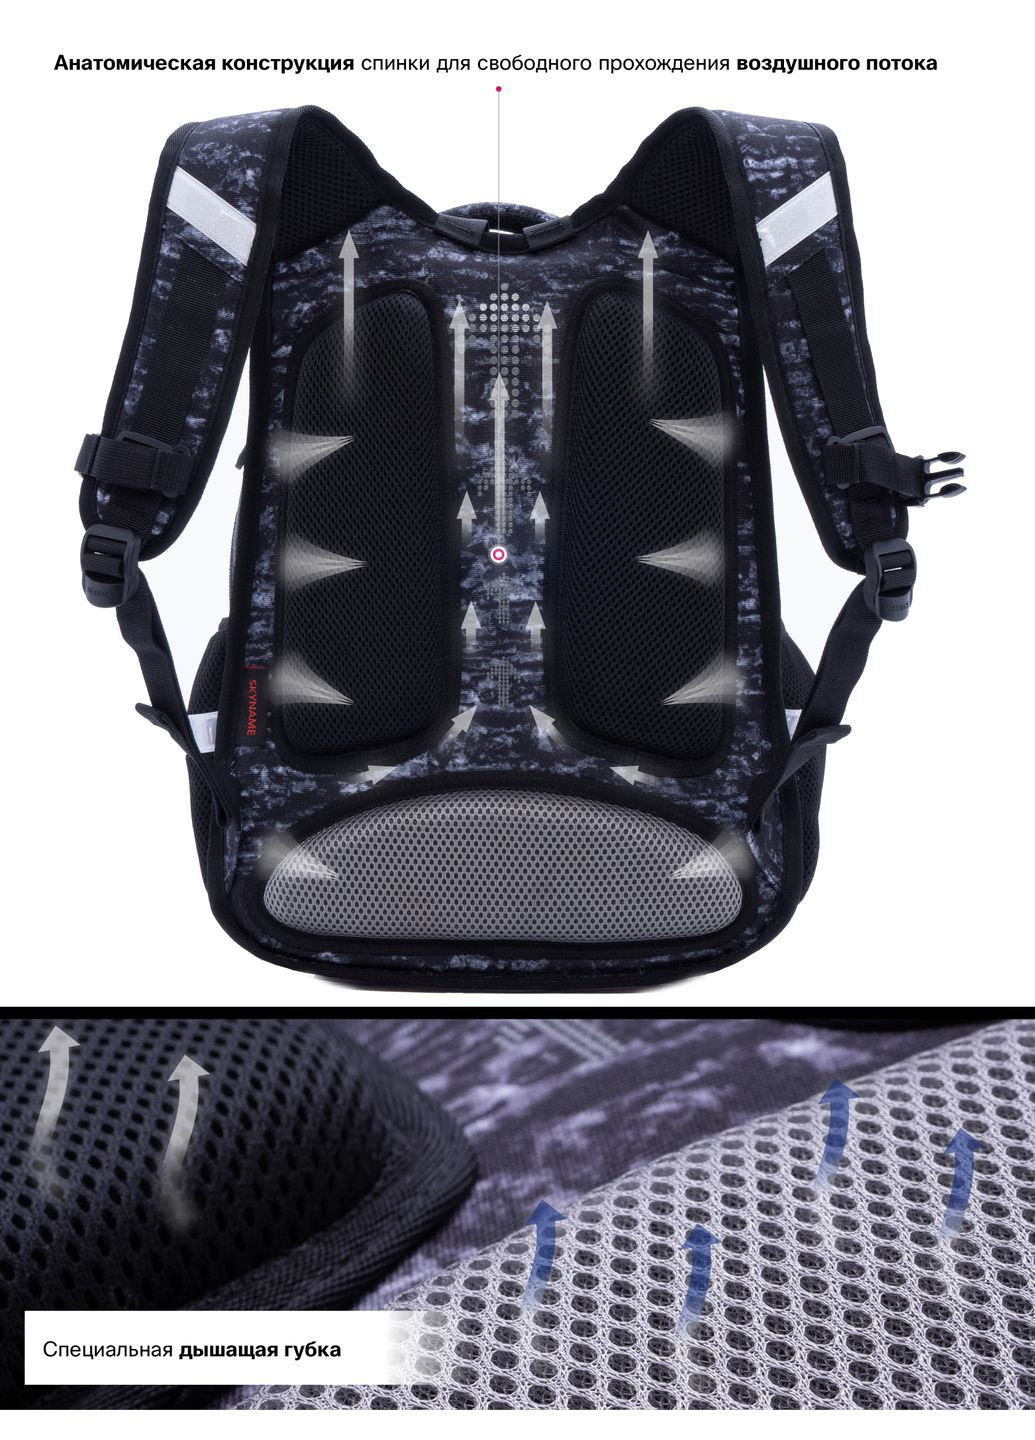 Шкільний рюкзак з ортопедичною спинкою для хлопчика Машина 38х29х16 см чорний для початкової школи / SkyName R2-177 Winner (293504253)